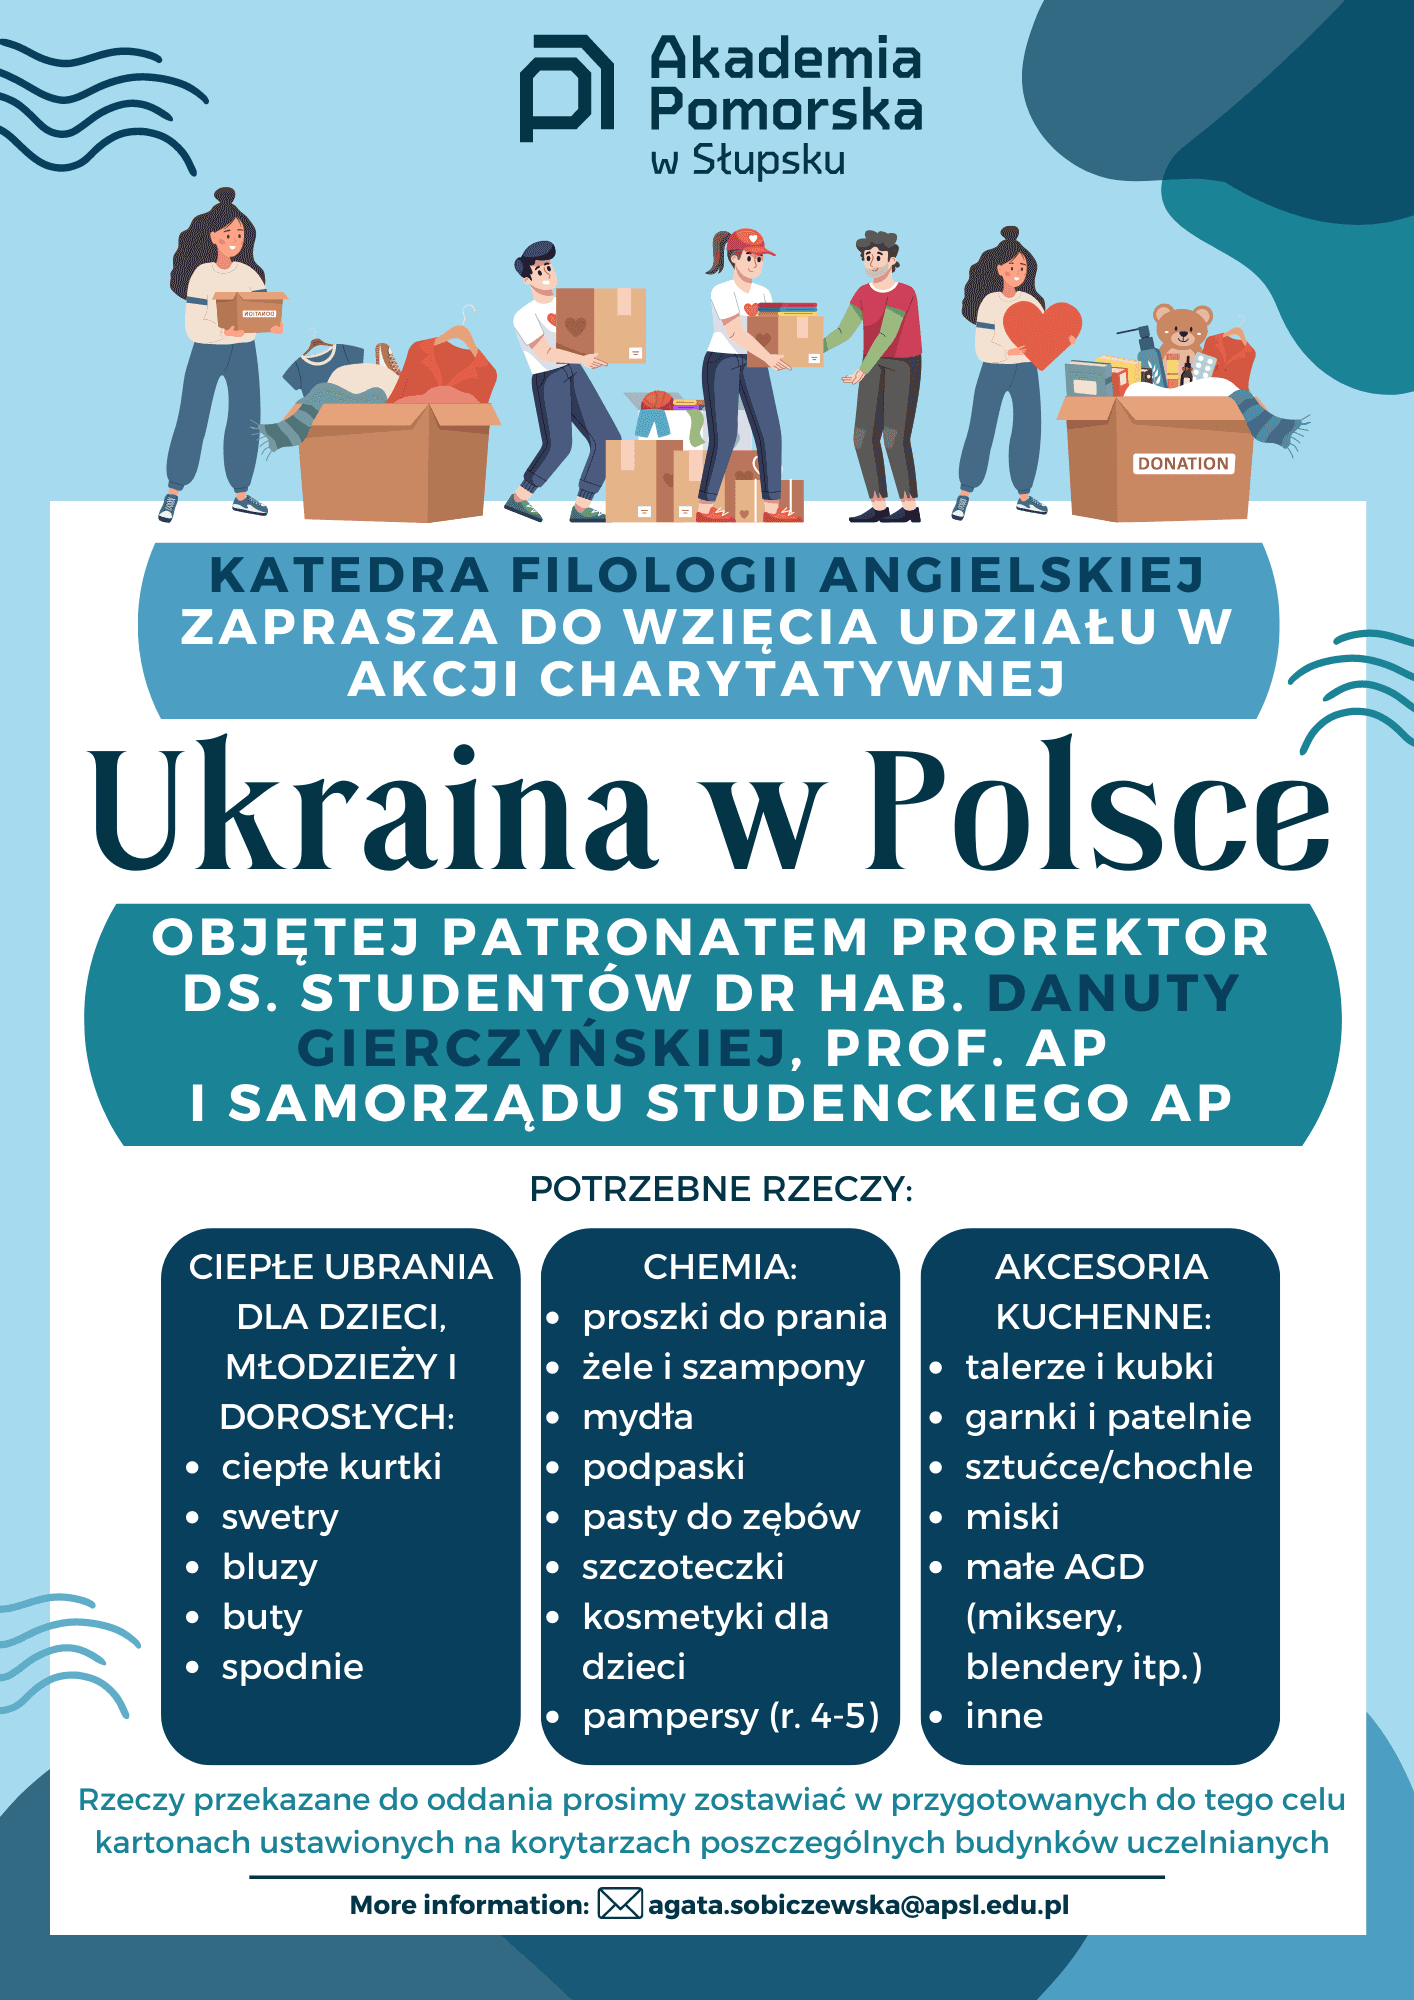 Akcja charytatywna "Ukraina w Polsce"